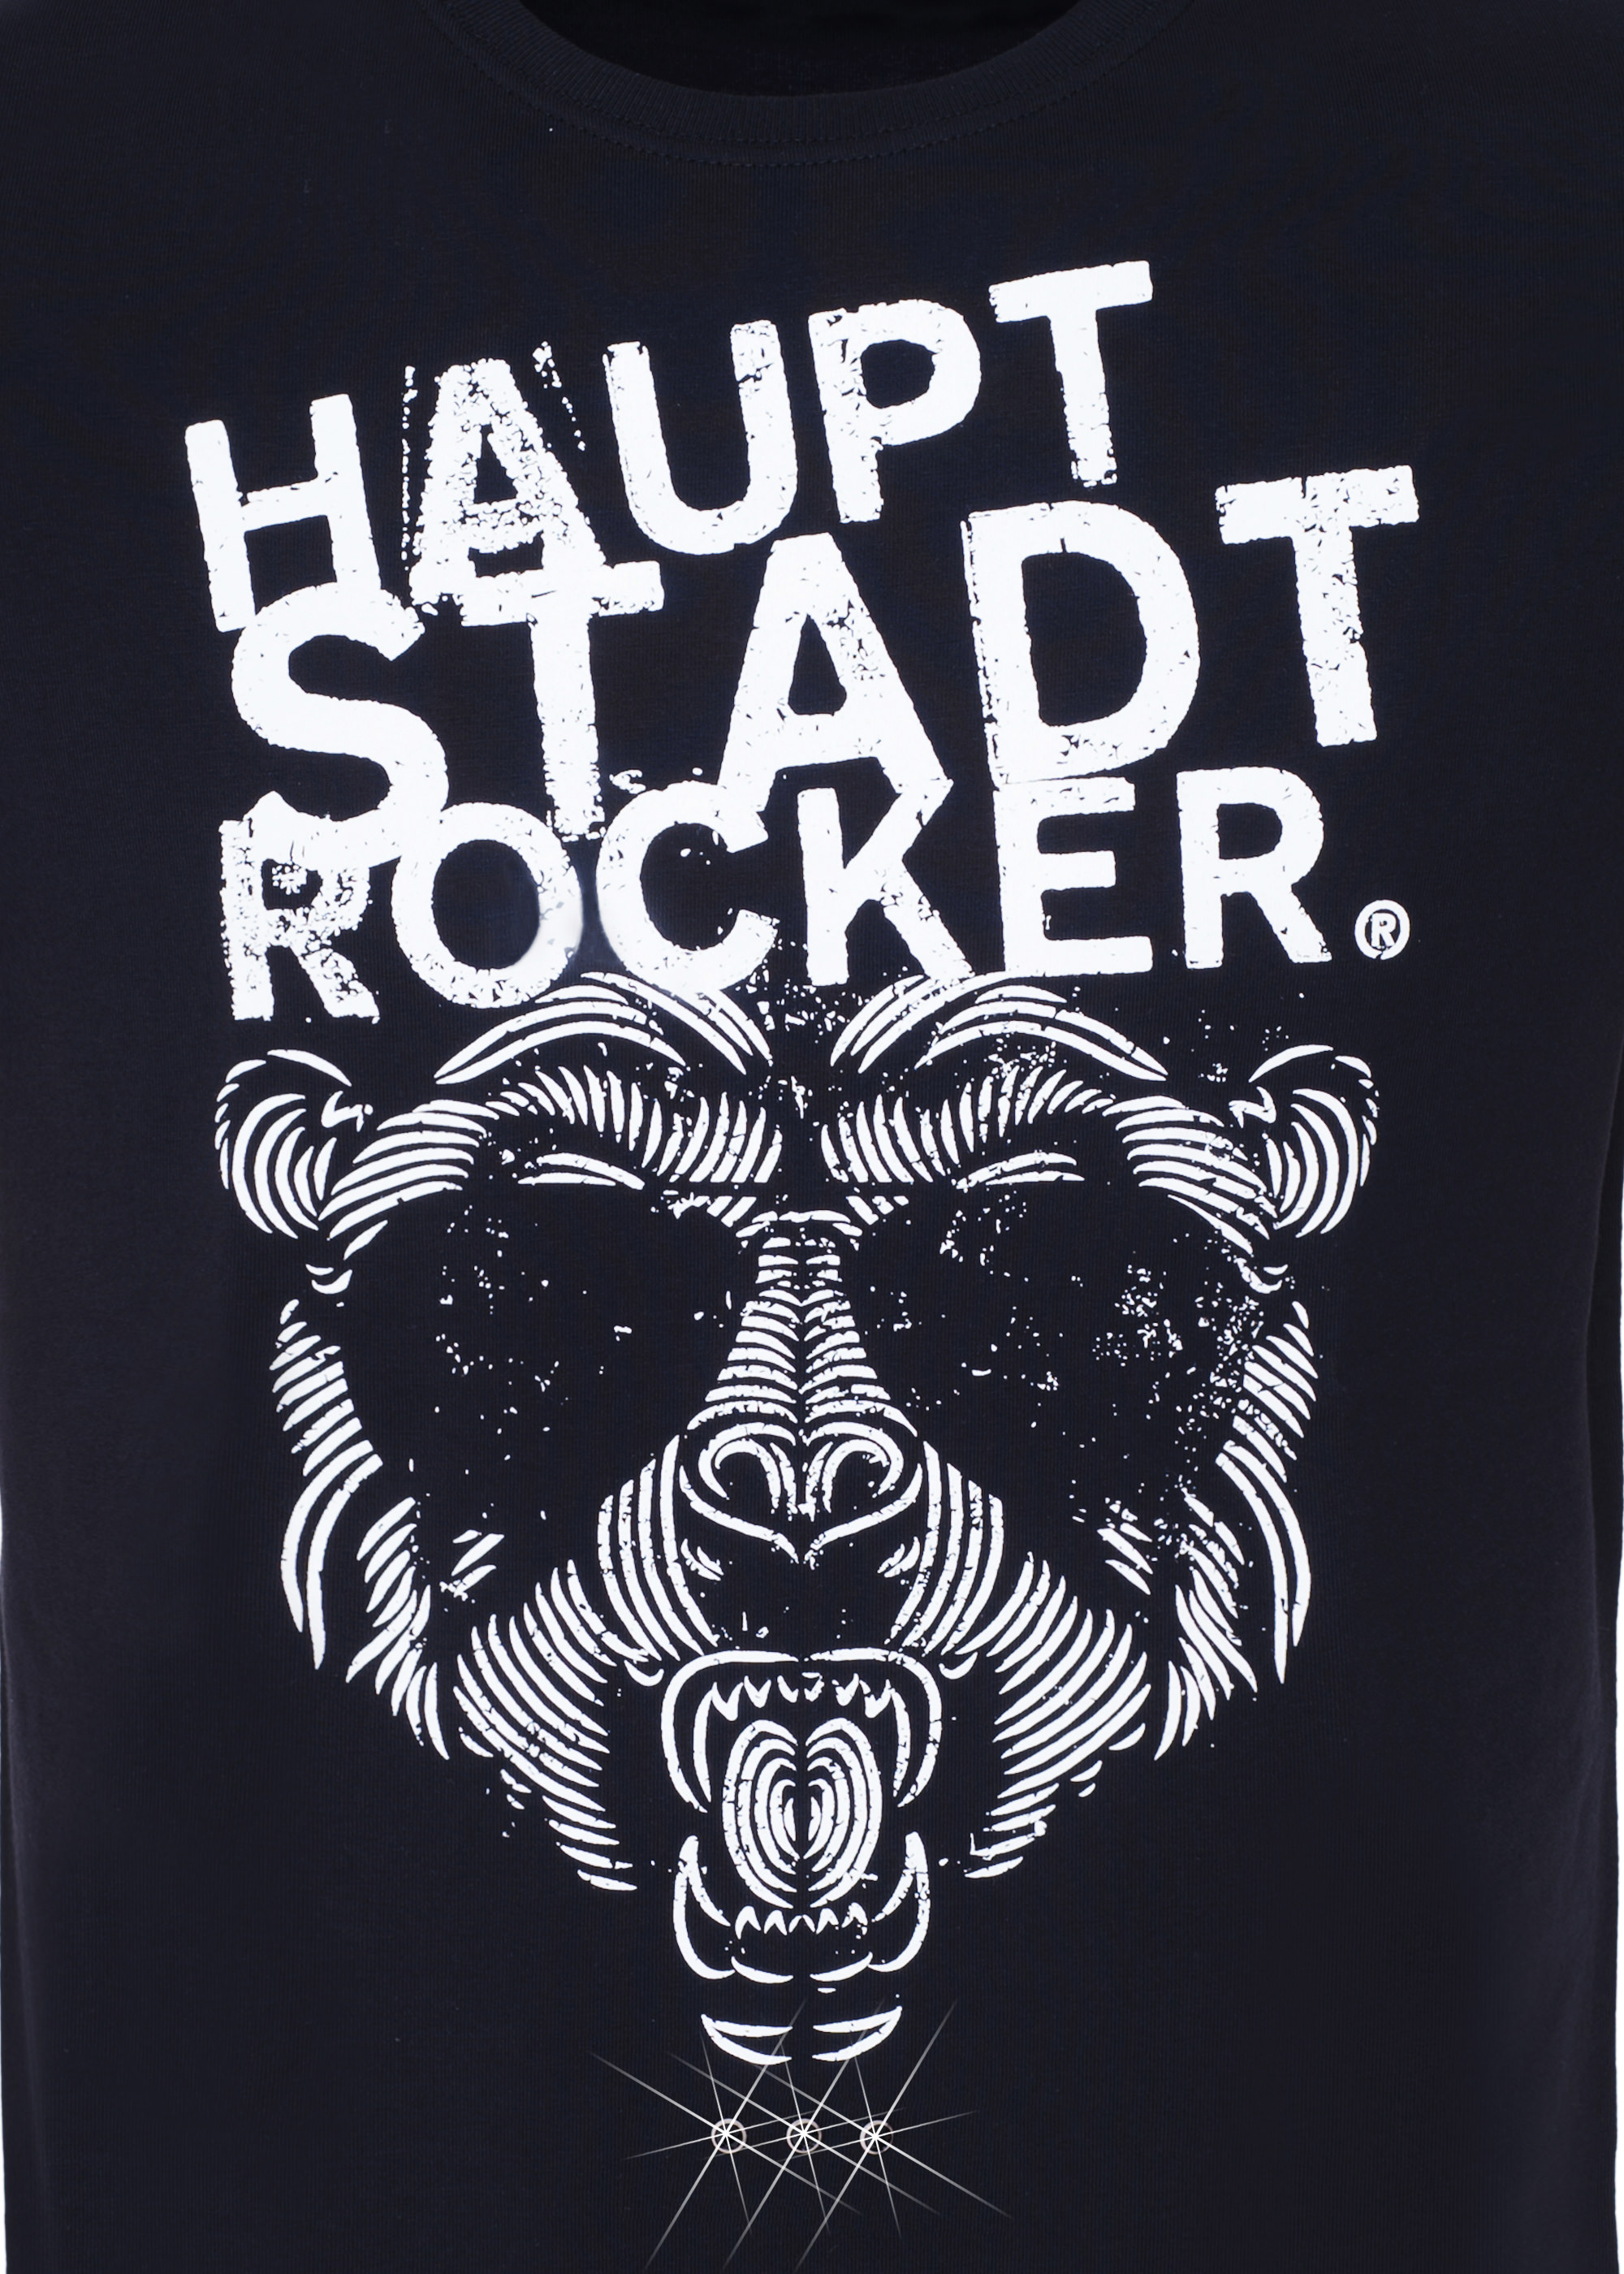 HAUPTSTADTROCKER Ray Bear T-Shirt